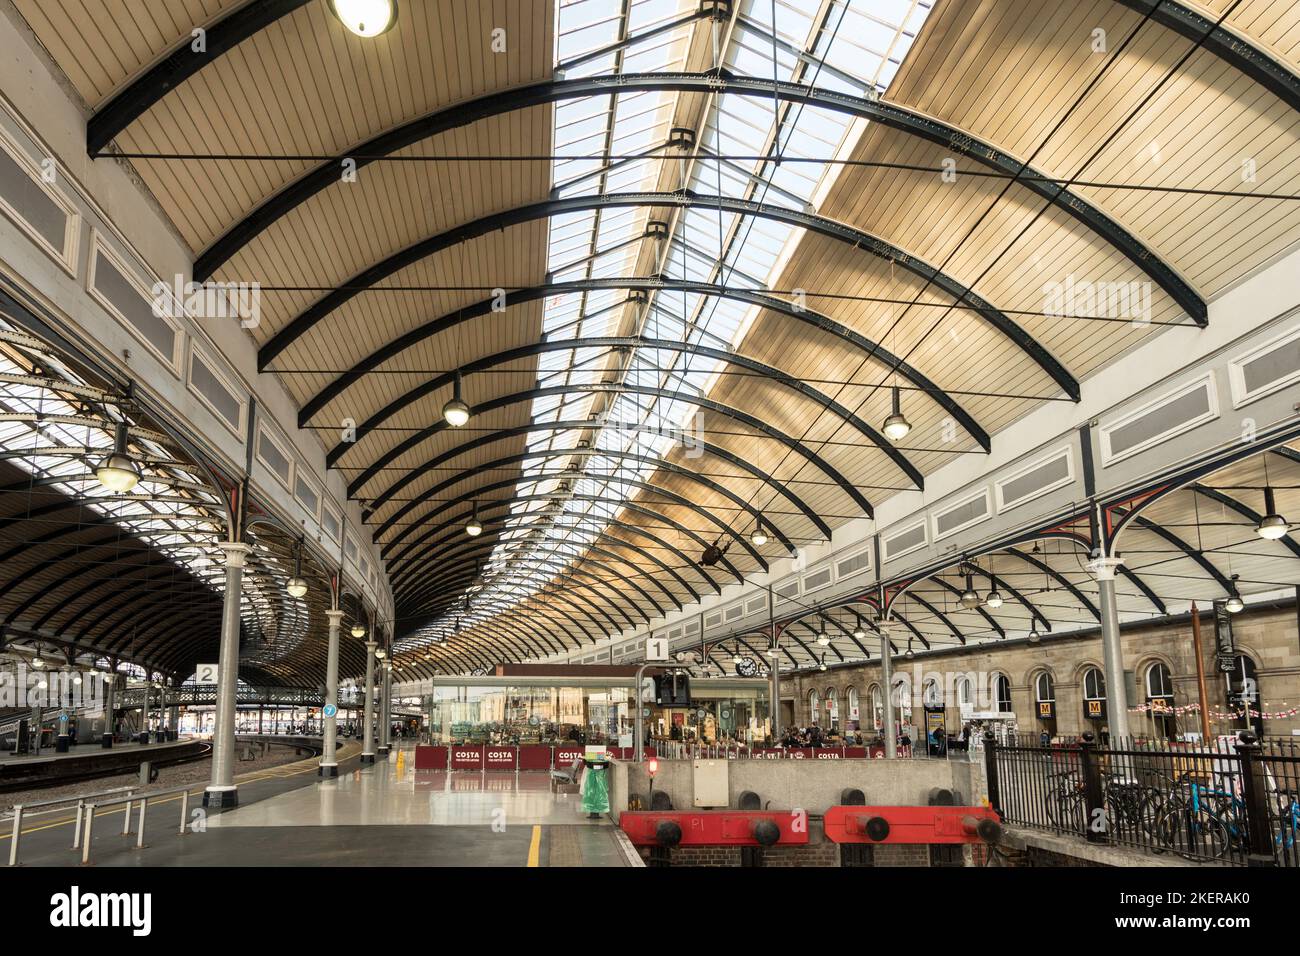 All'interno della stazione ferroviaria centrale di Newcastle, che mostra il tetto curvo e la struttura di supporto in ferro, Newcastle upon Tyne, Inghilterra, Regno Unito Foto Stock